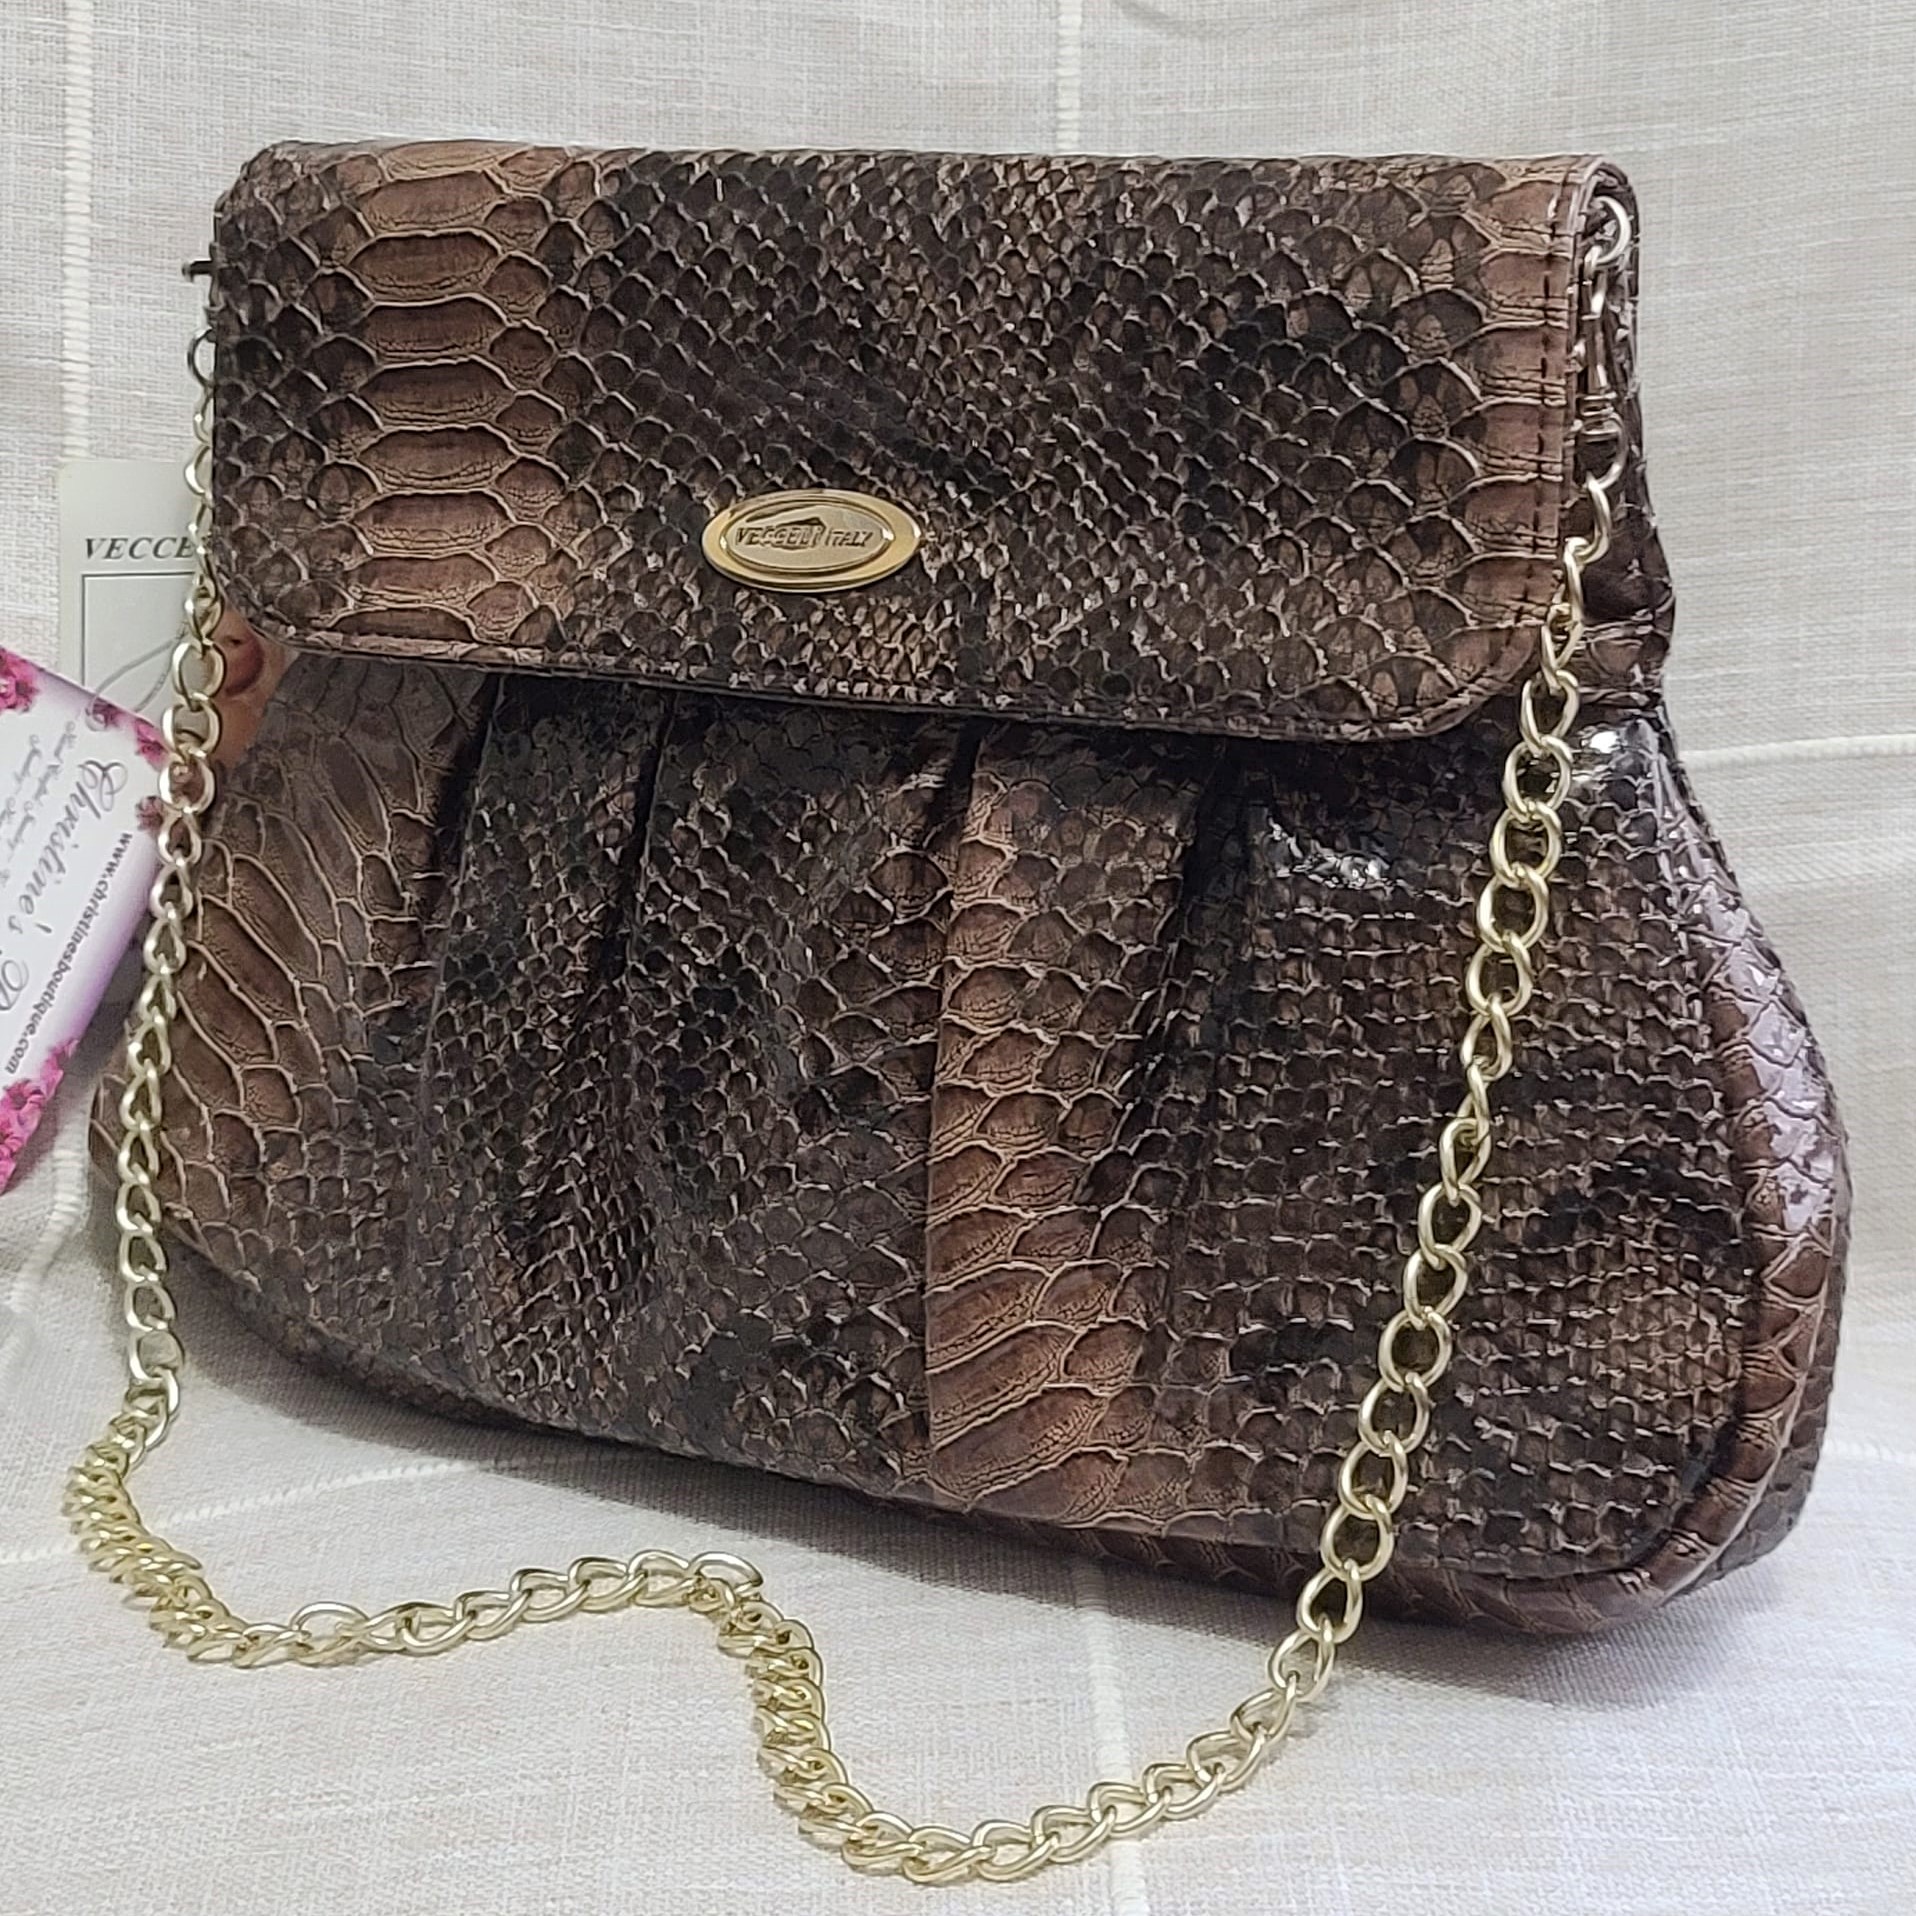 Ronella Lucci Vecceli Snake Embossed Handbag w/ Chain - Click Image to Close